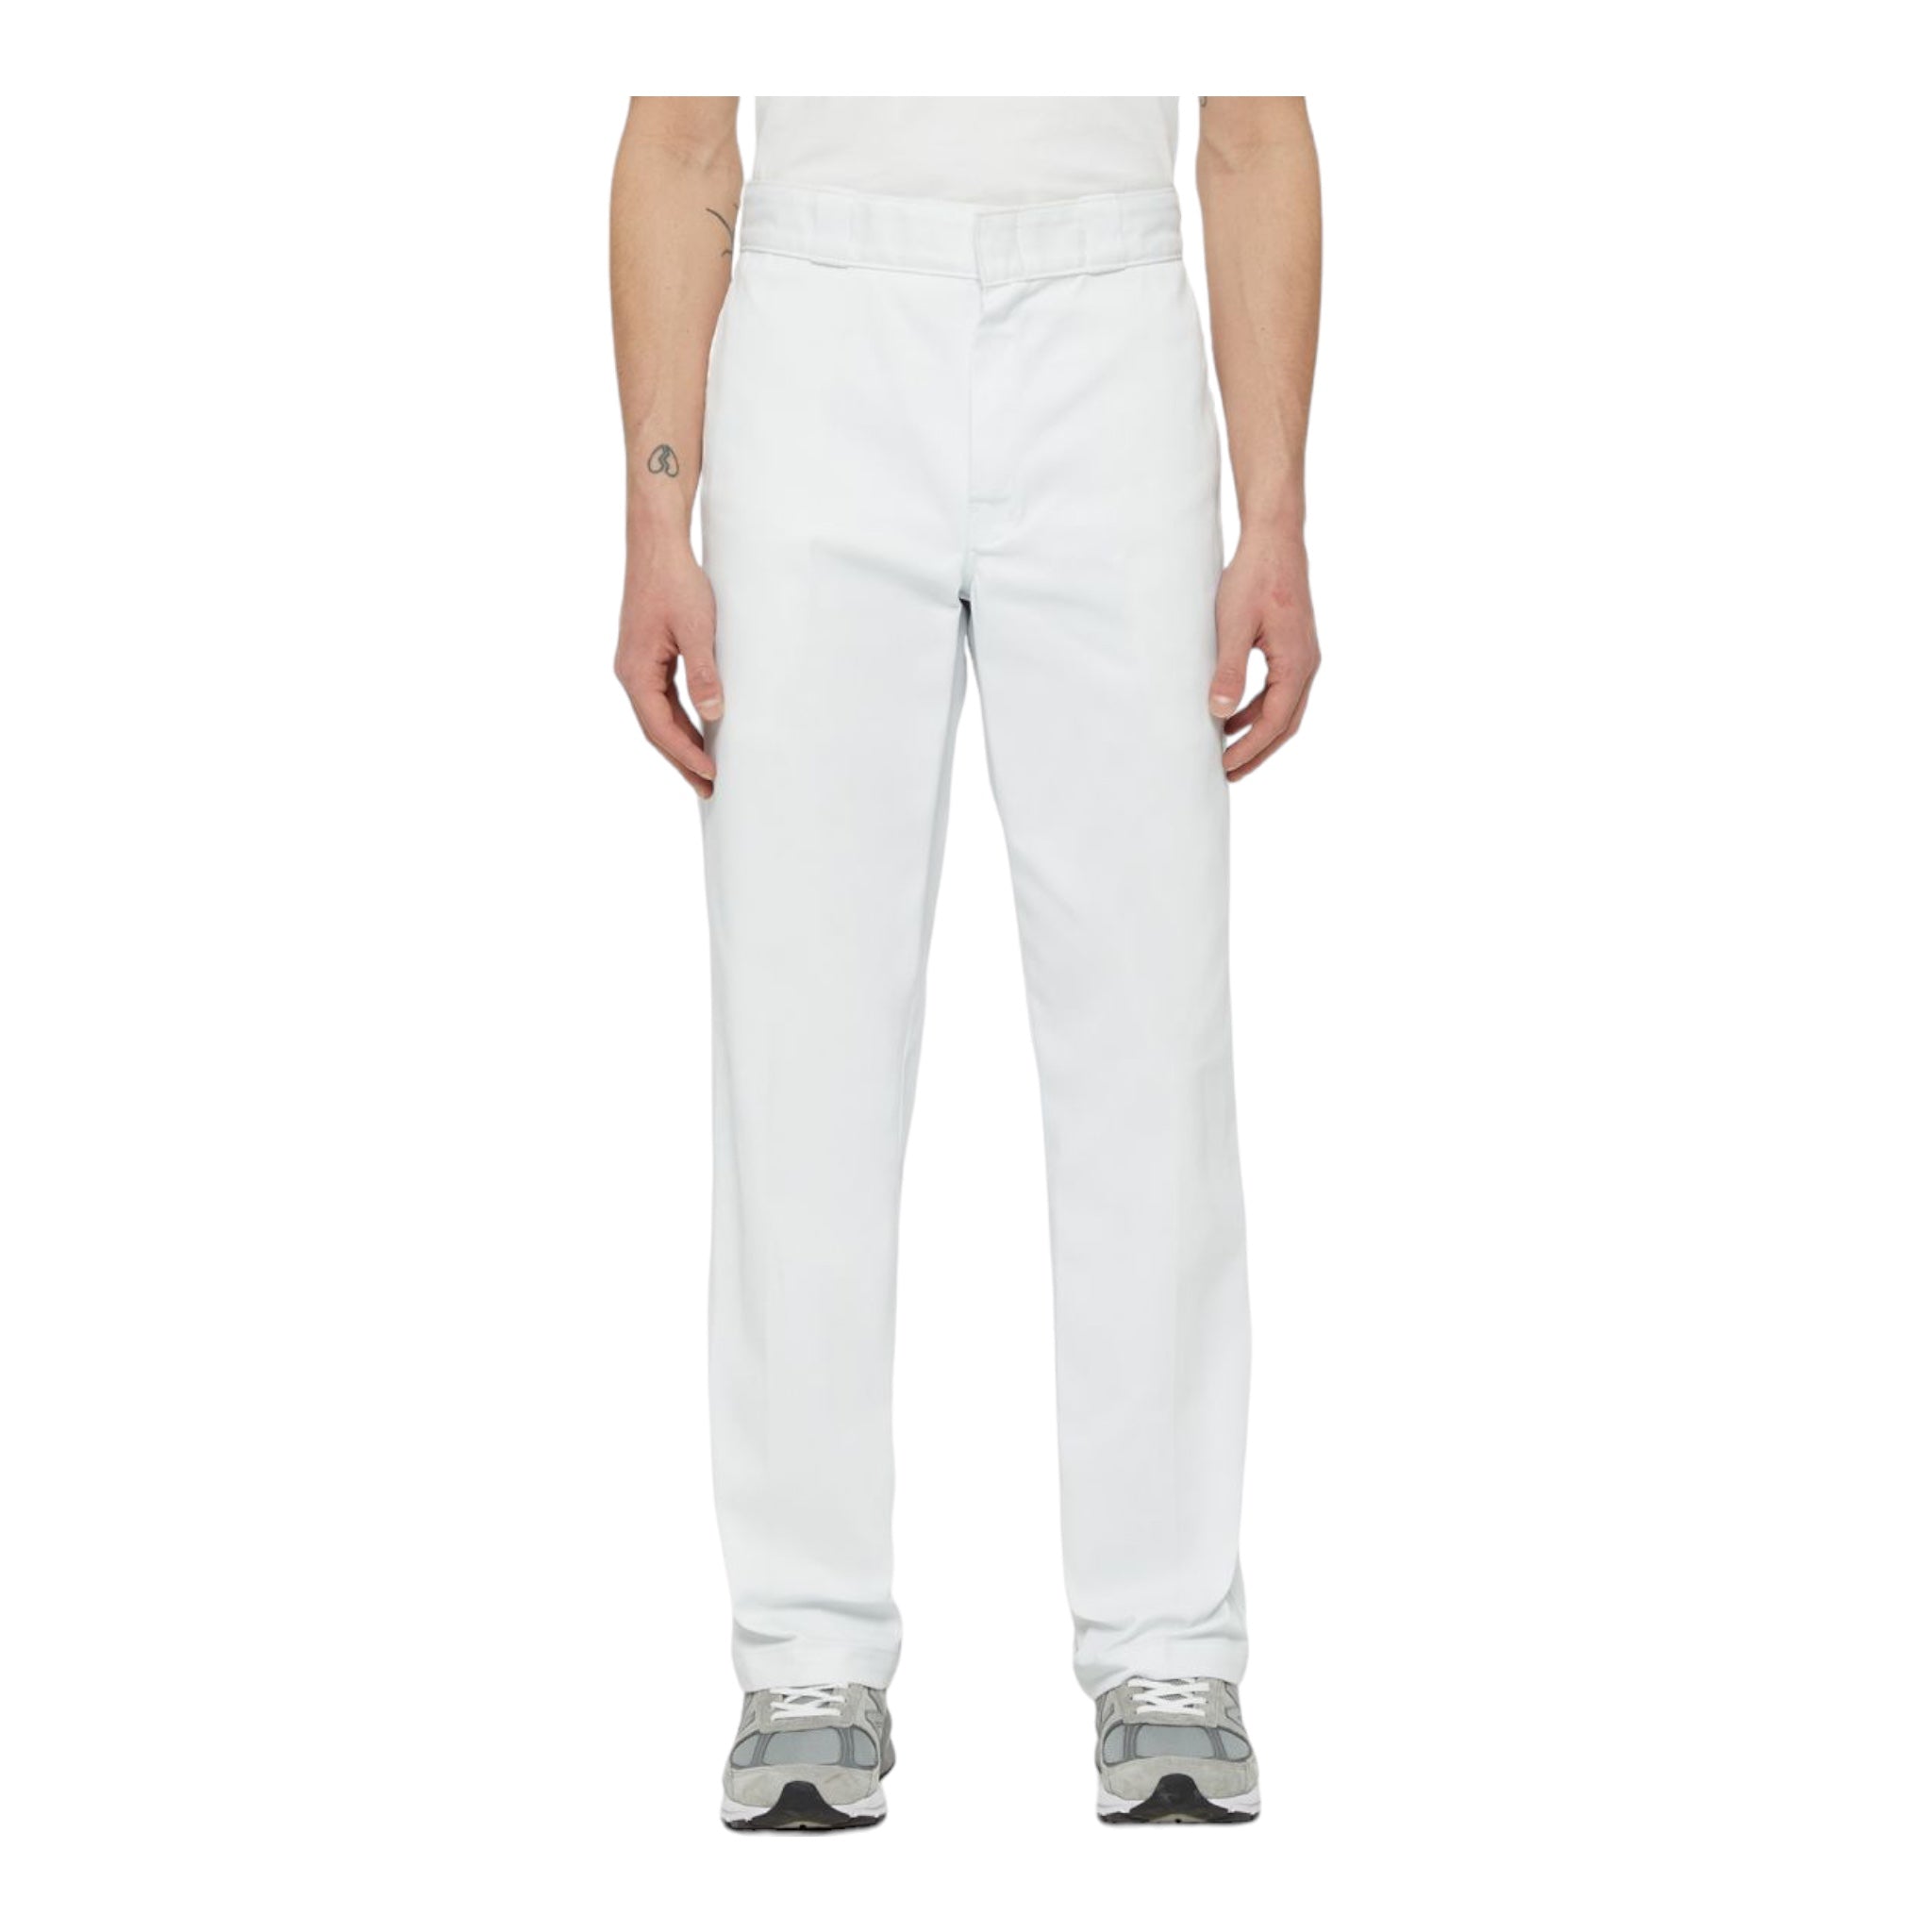 Pantalone 874 Original Fit Bianco DK0A4XK6WHX1